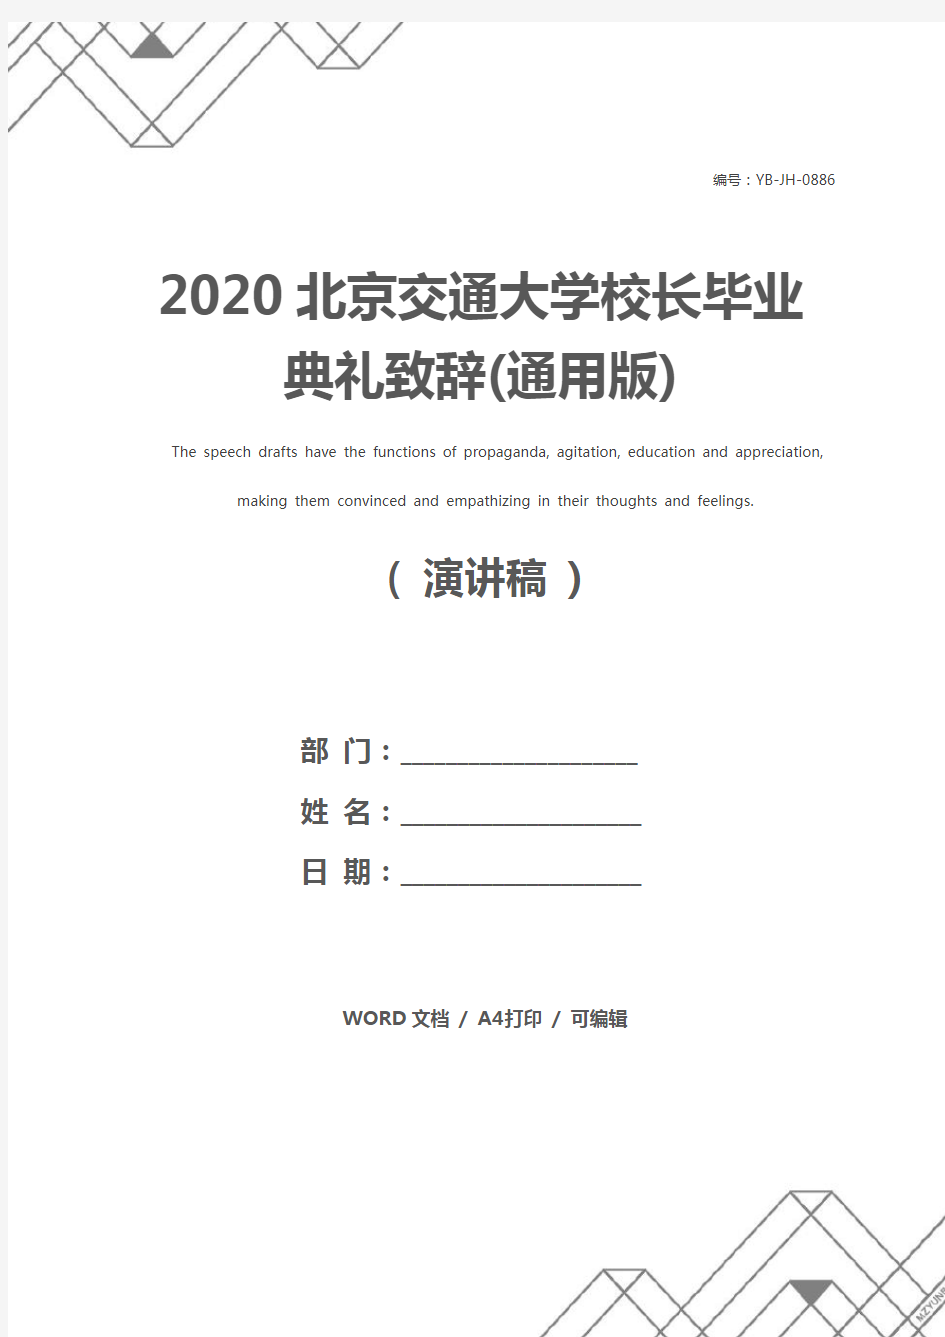 2020北京交通大学校长毕业典礼致辞(通用版)